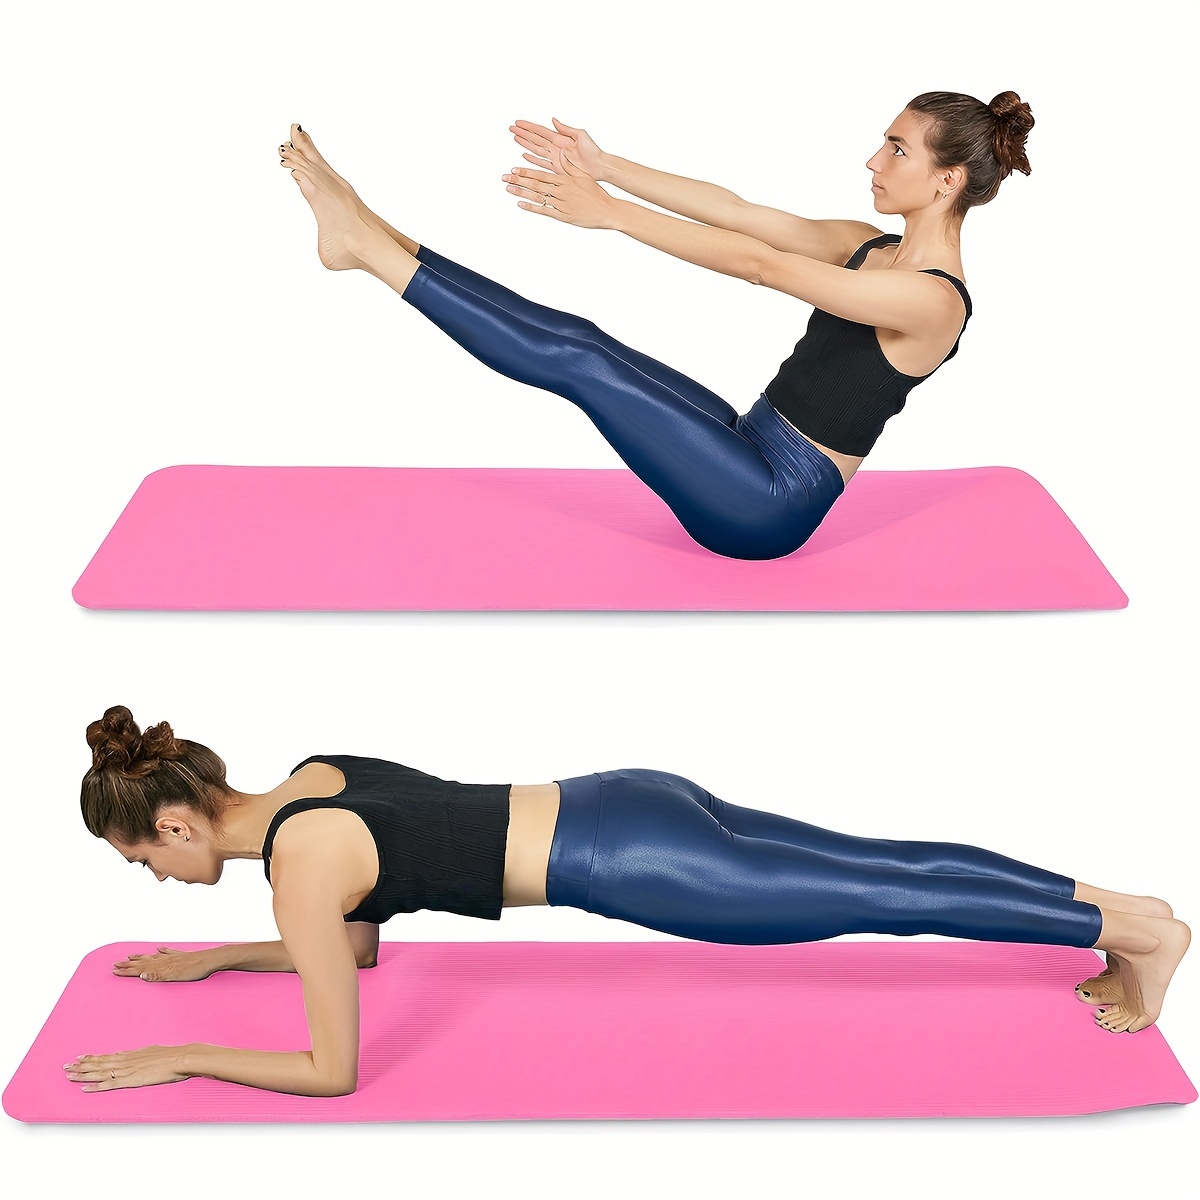  N\C Esterilla de yoga de alta densidad 15 0.394 in  engrosamiento y ensanchamiento de la danza Yoga Fitness Mat adecuado para  yoga, pilates y deportes, a prueba de desgarros, a prueba